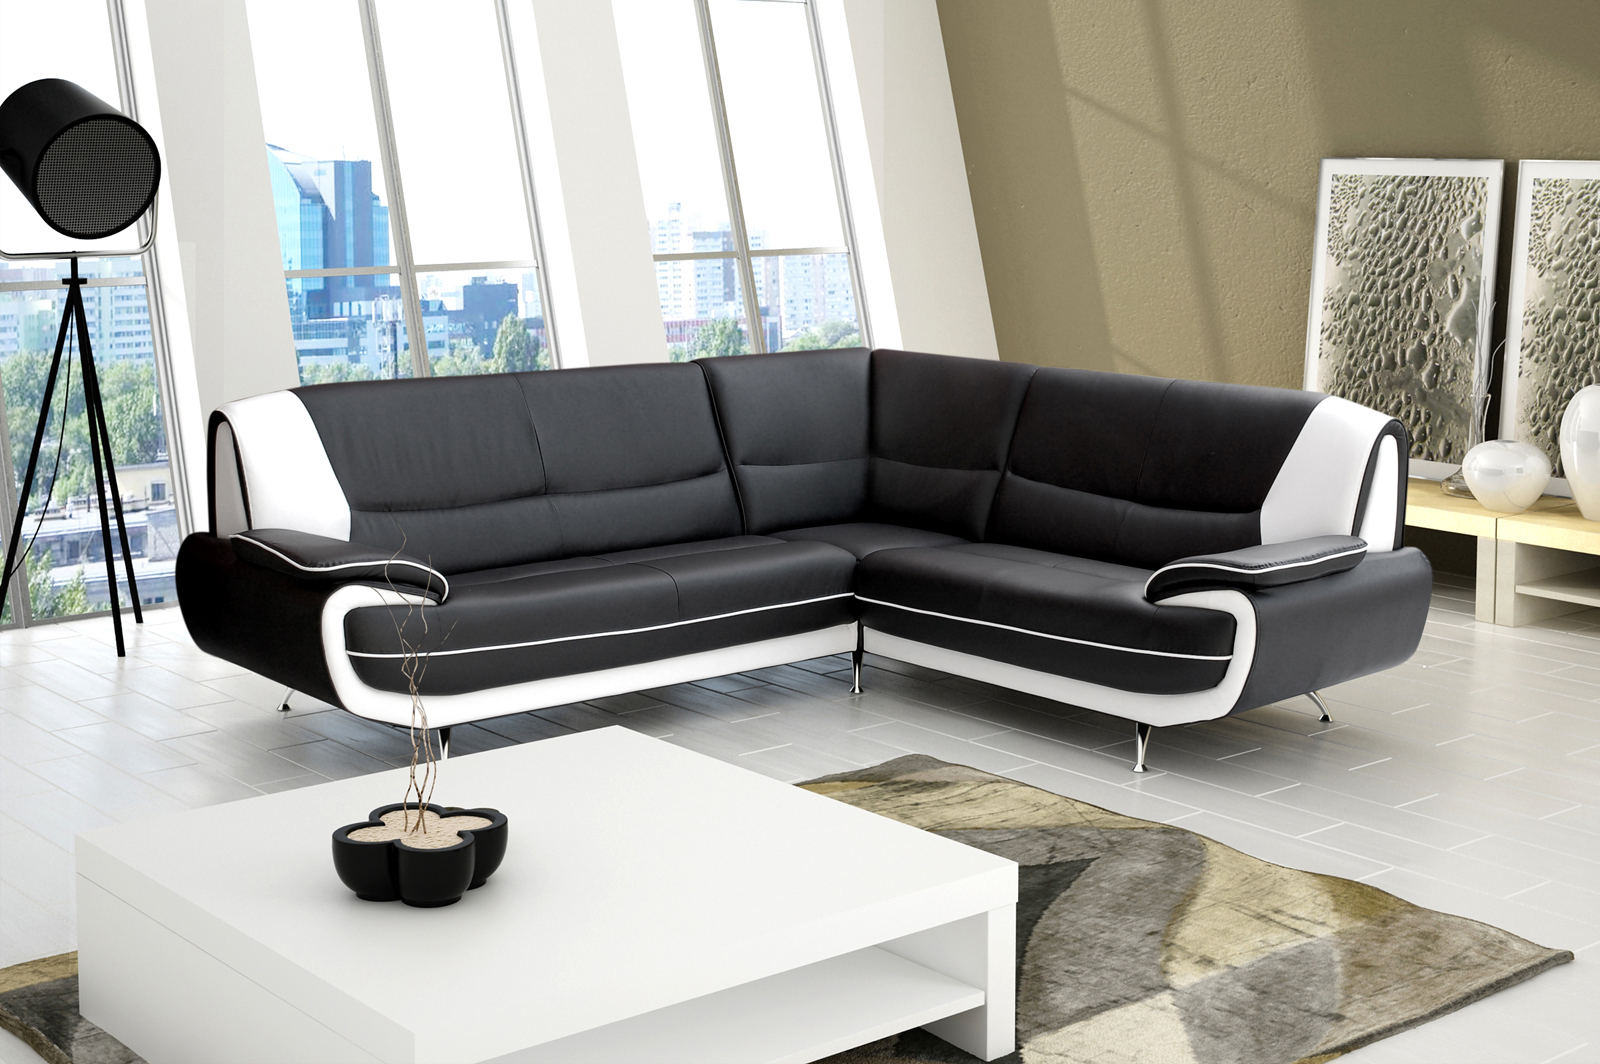 Sofa Couch Ecksofa Palermo Wohnzimmer Designer Eckcouch schwarz weiß | eBay